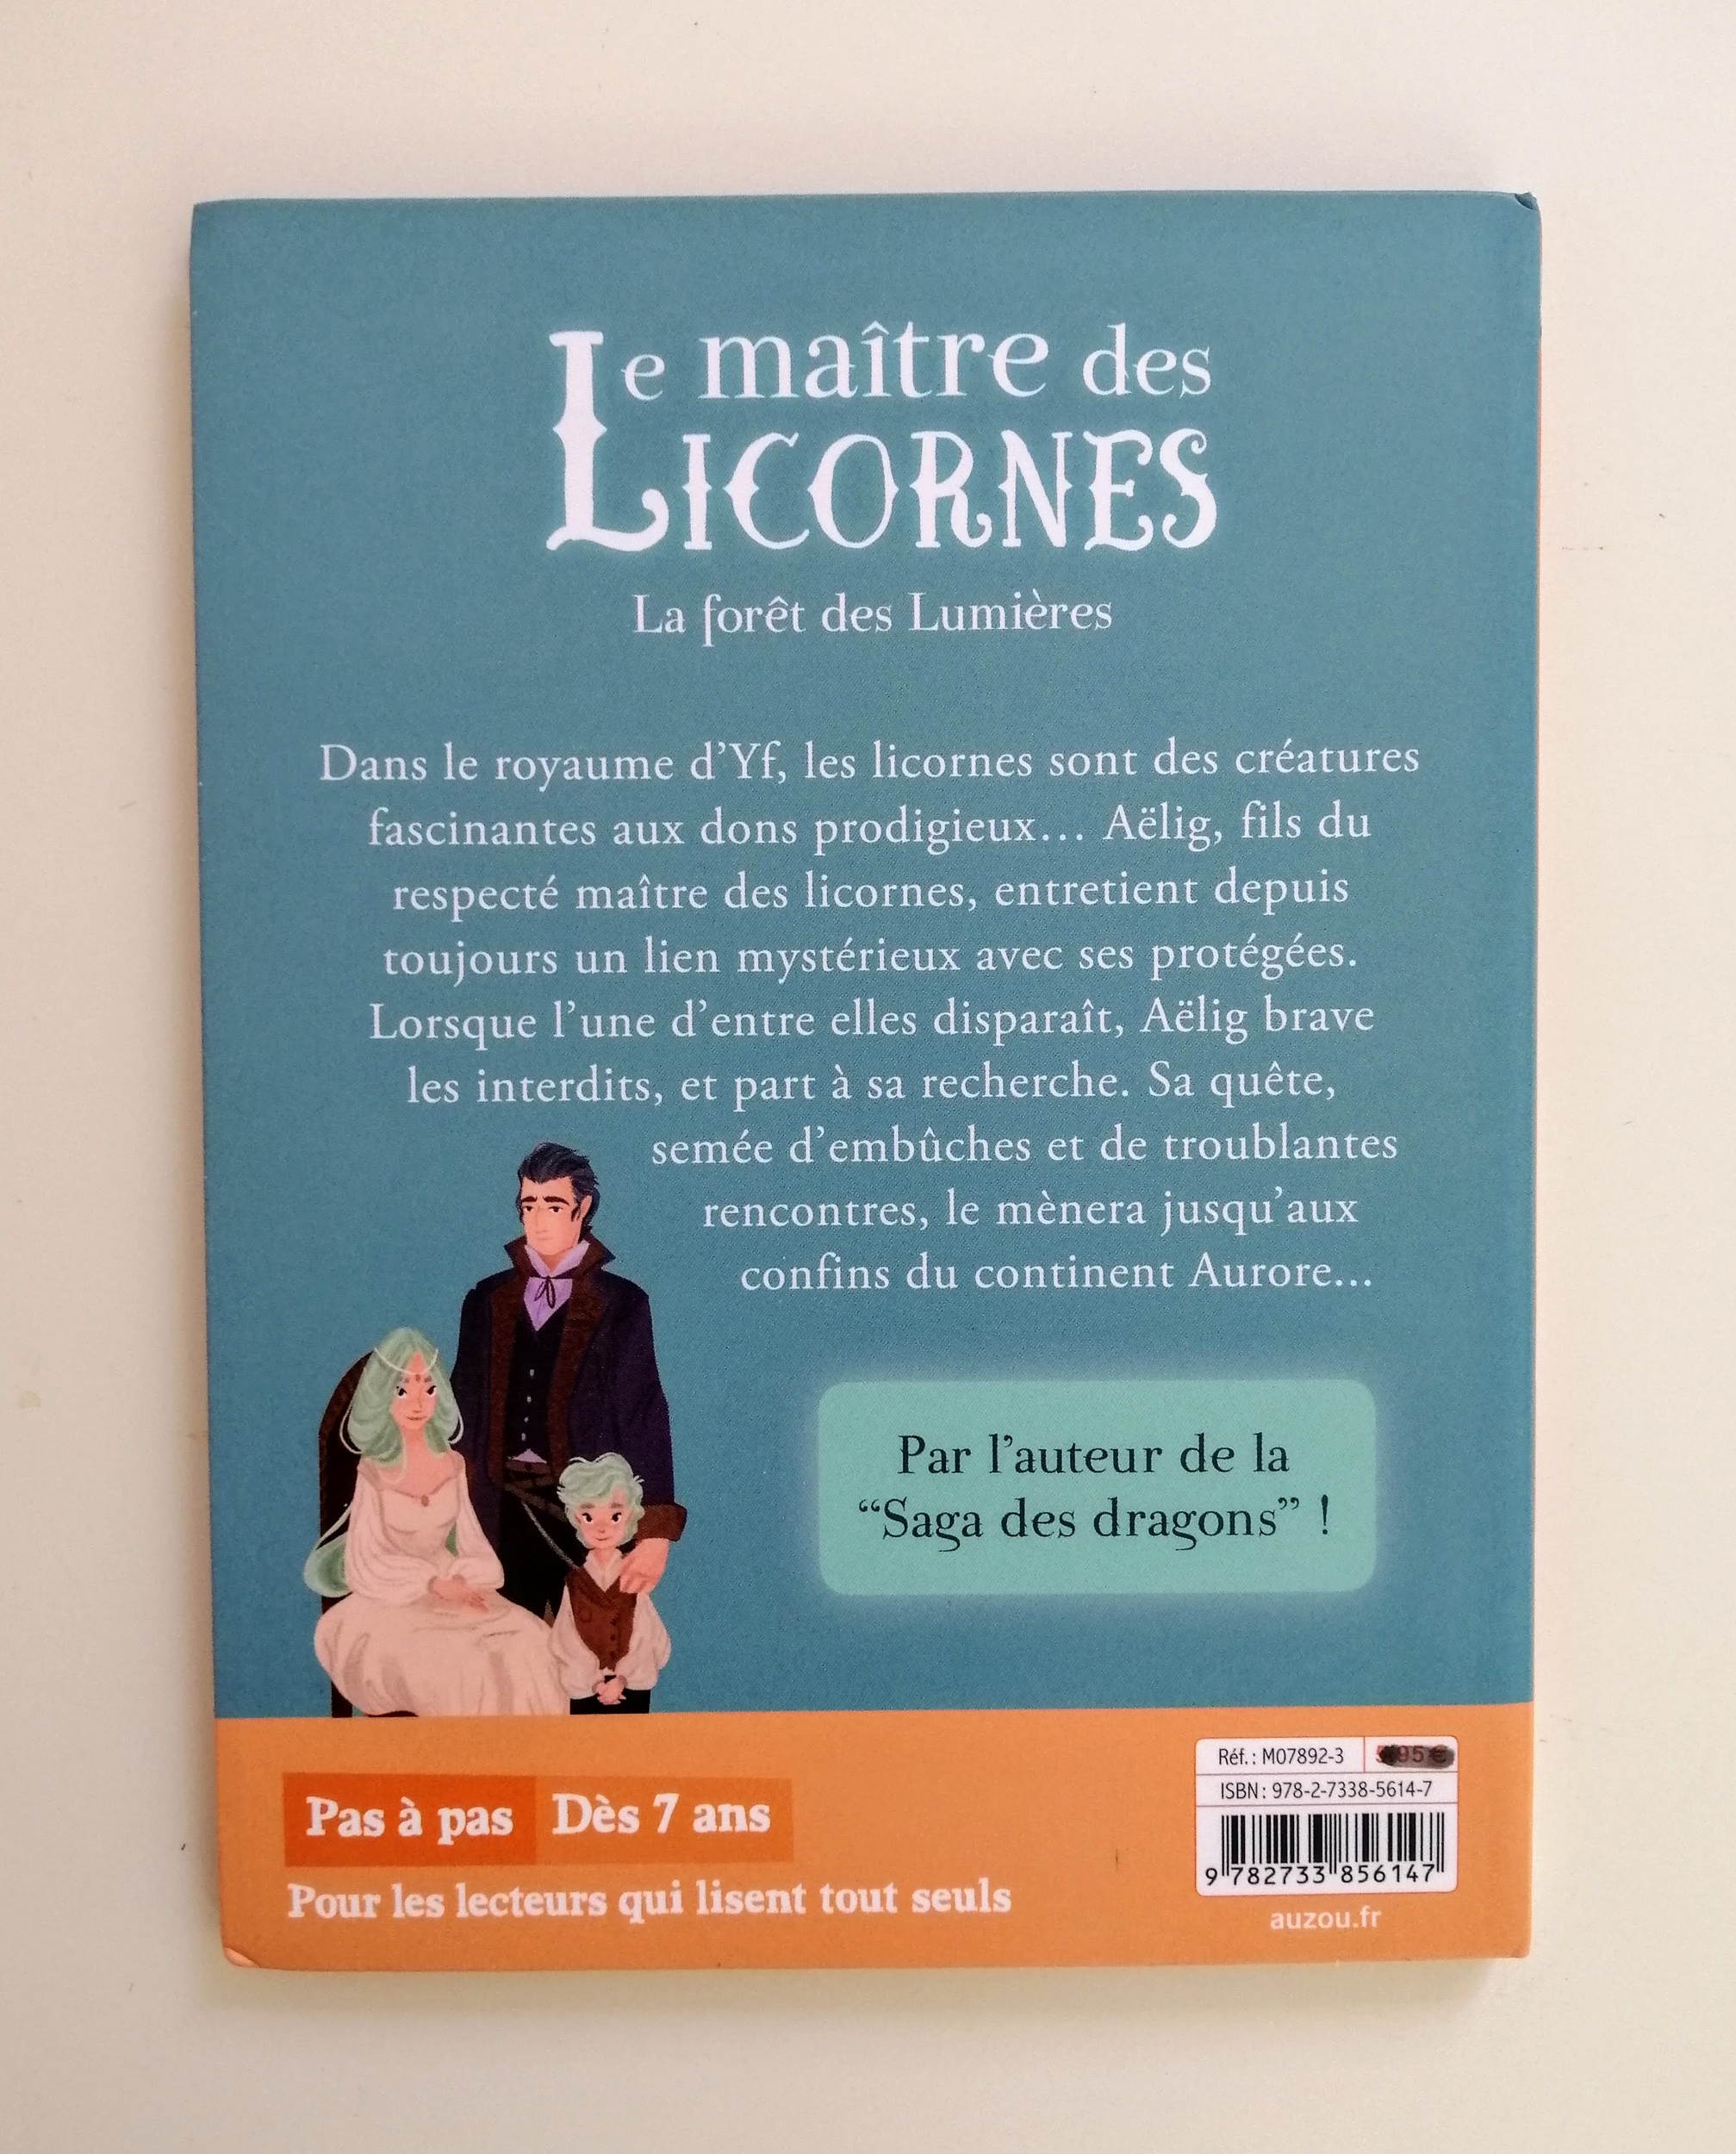 Le maître des licornes - La forêt des Lumières - Éric Sanvoisin - Federica Frenna - Livre poche - Auzou - LBA - V